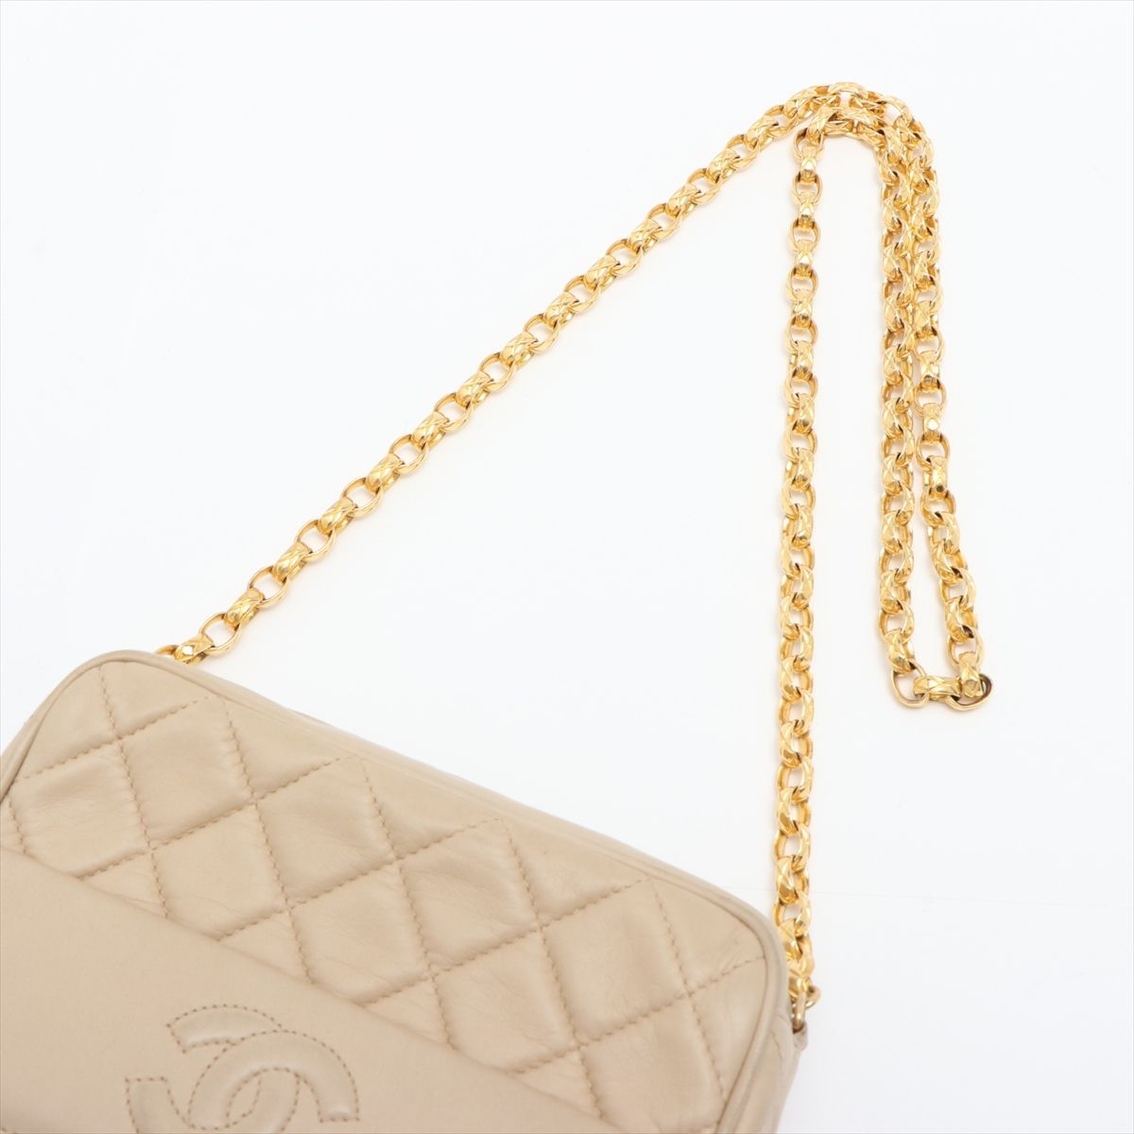 Chanel Beige Matelasse Lambskin Front Pocket Shoulder Bag  (Pre-Owned) - Image 5 of 5